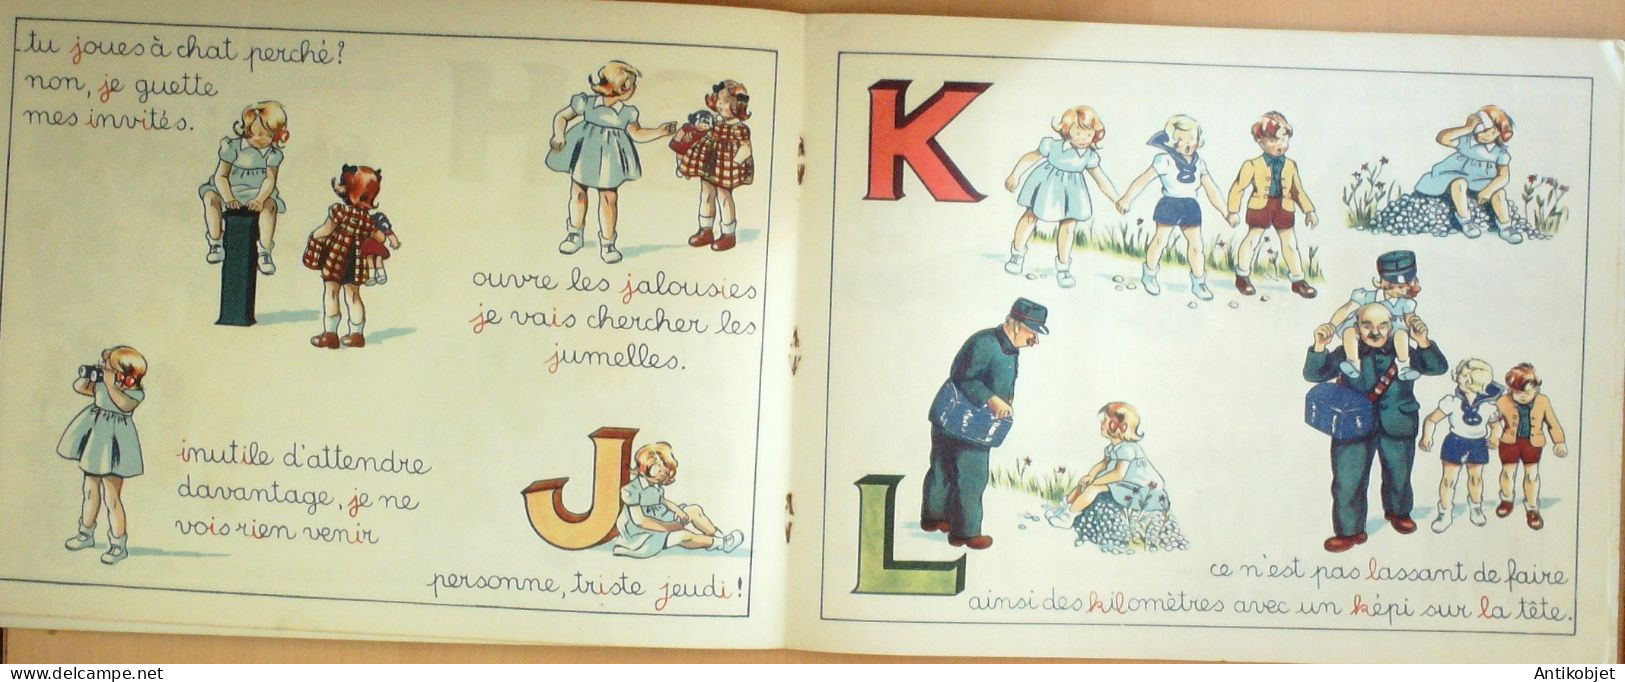 Bibiche & Son Alphabet Illustrateur Blanchard Eo 1946 - 5. Wereldoorlogen